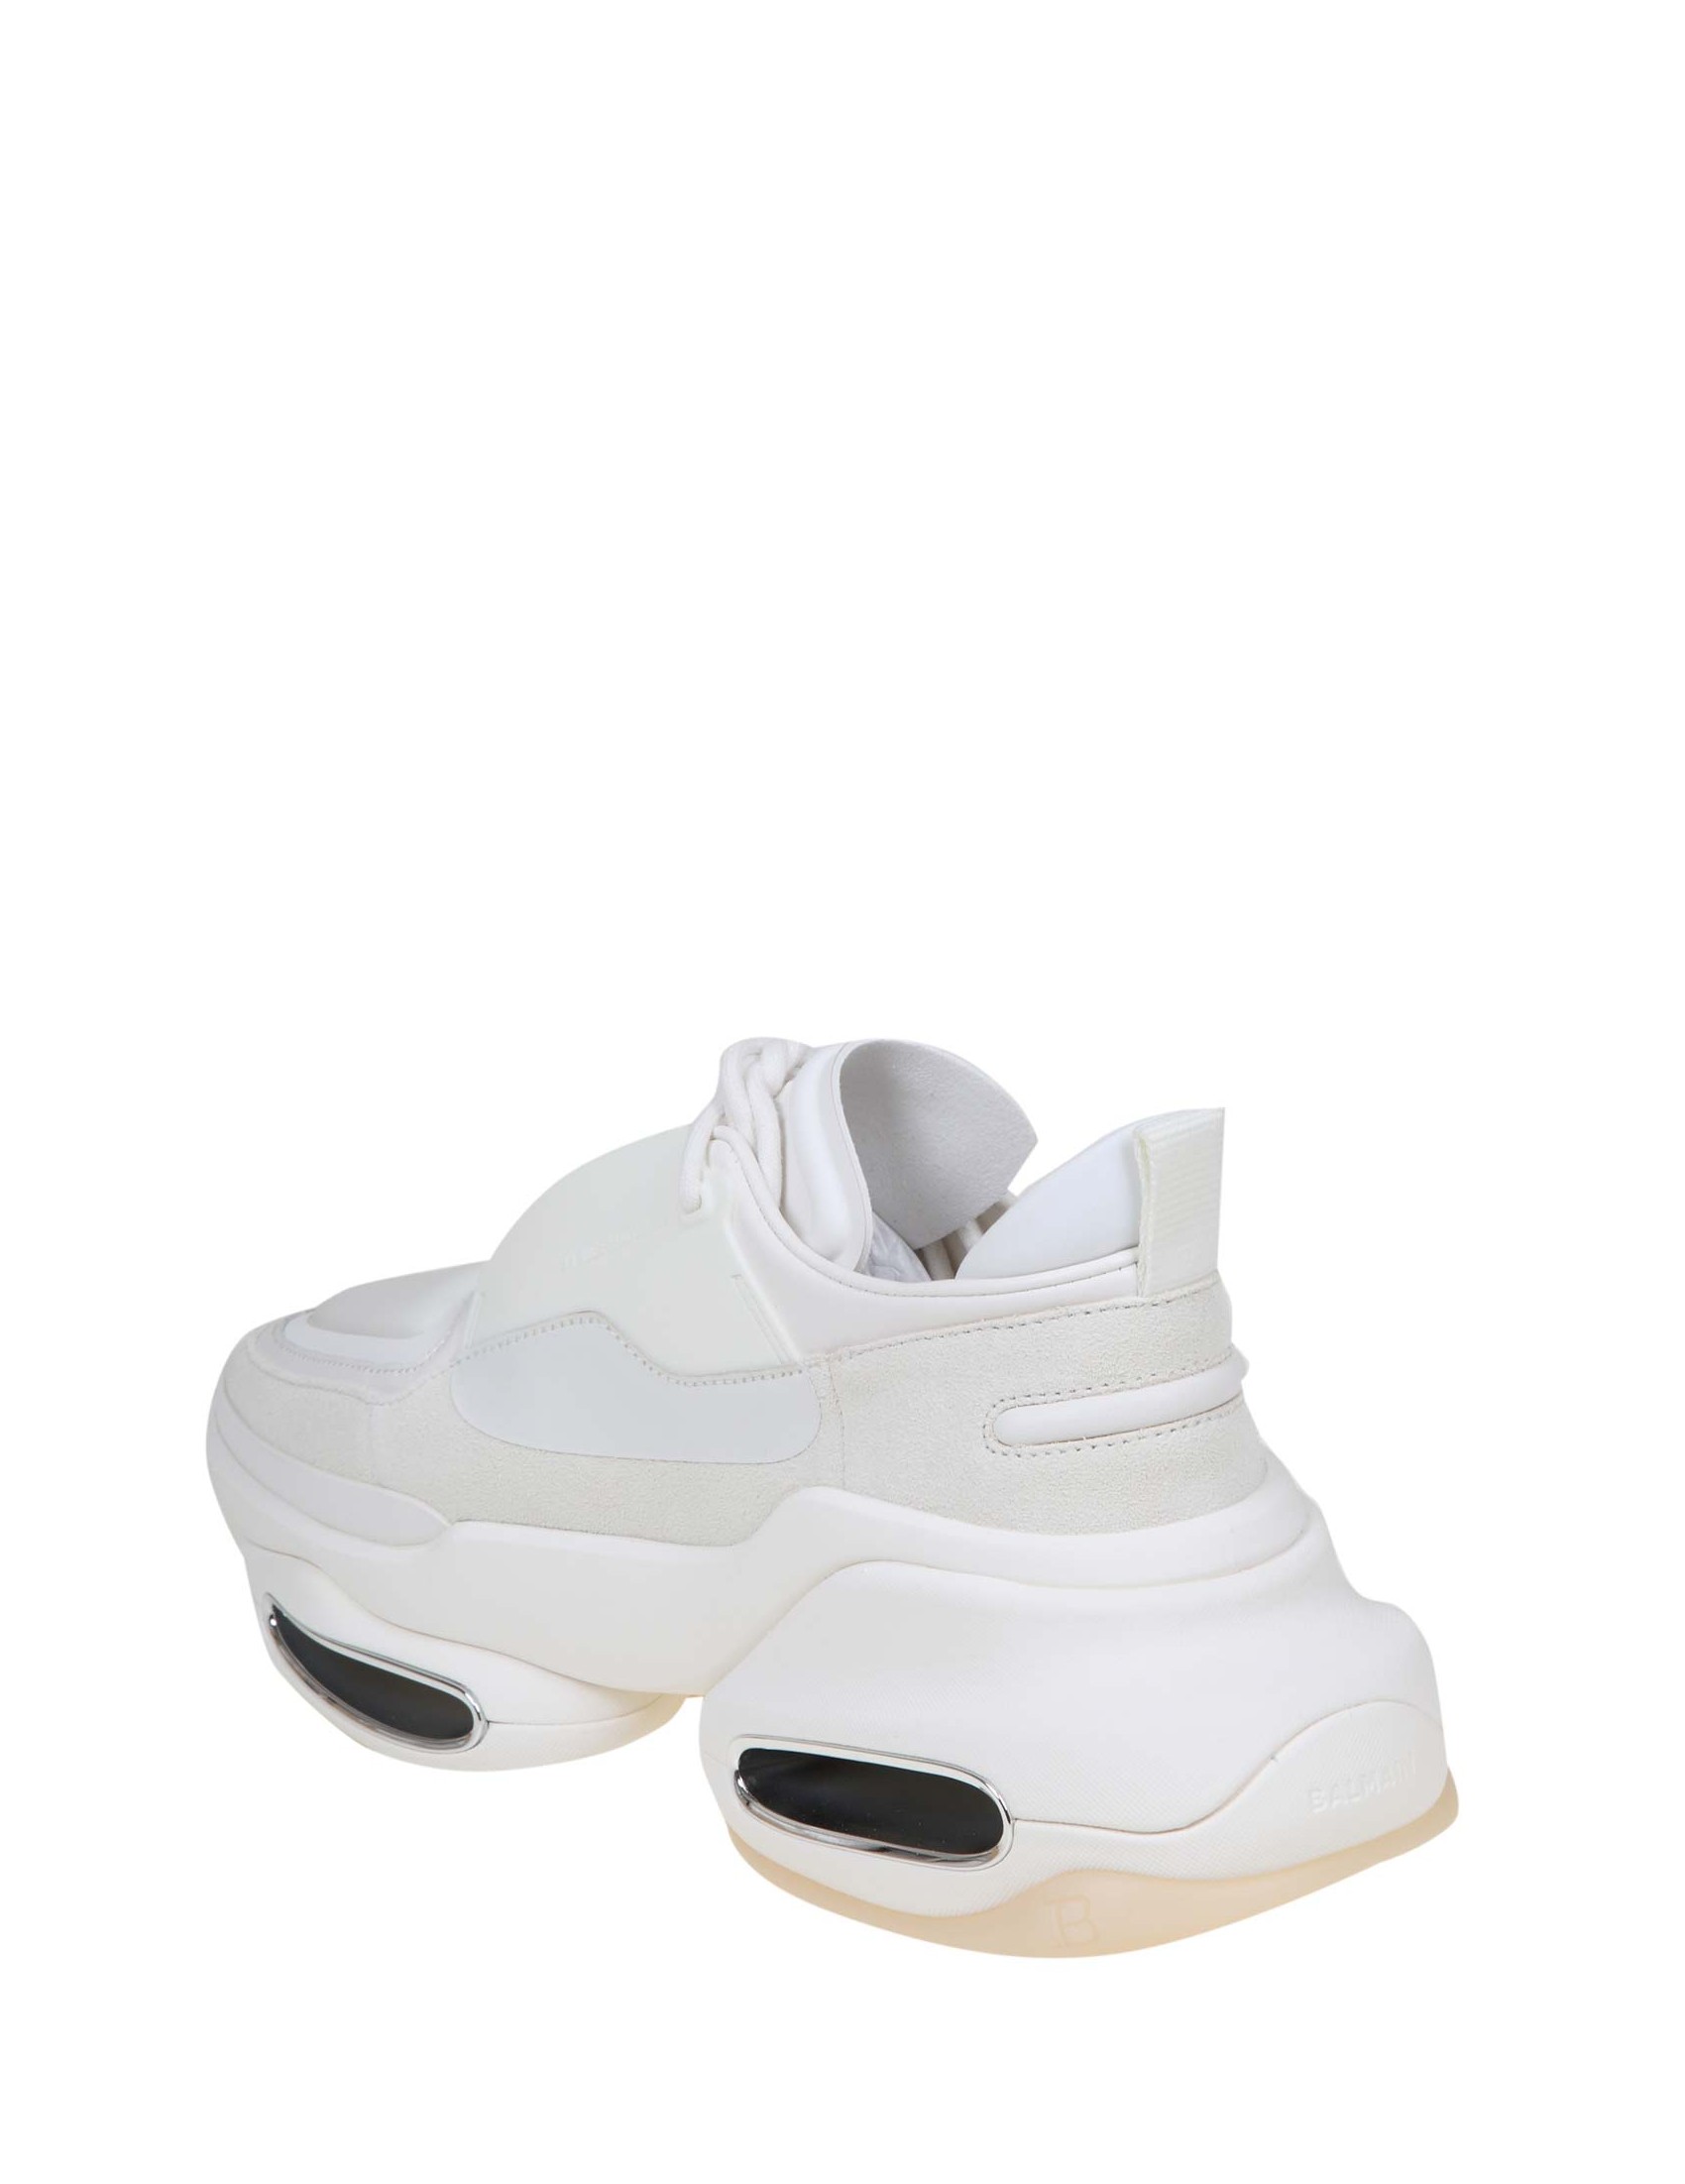 SneakersBalmain in Gomma di colore Bianco Donna Sneakers da Sneakers Balmain 